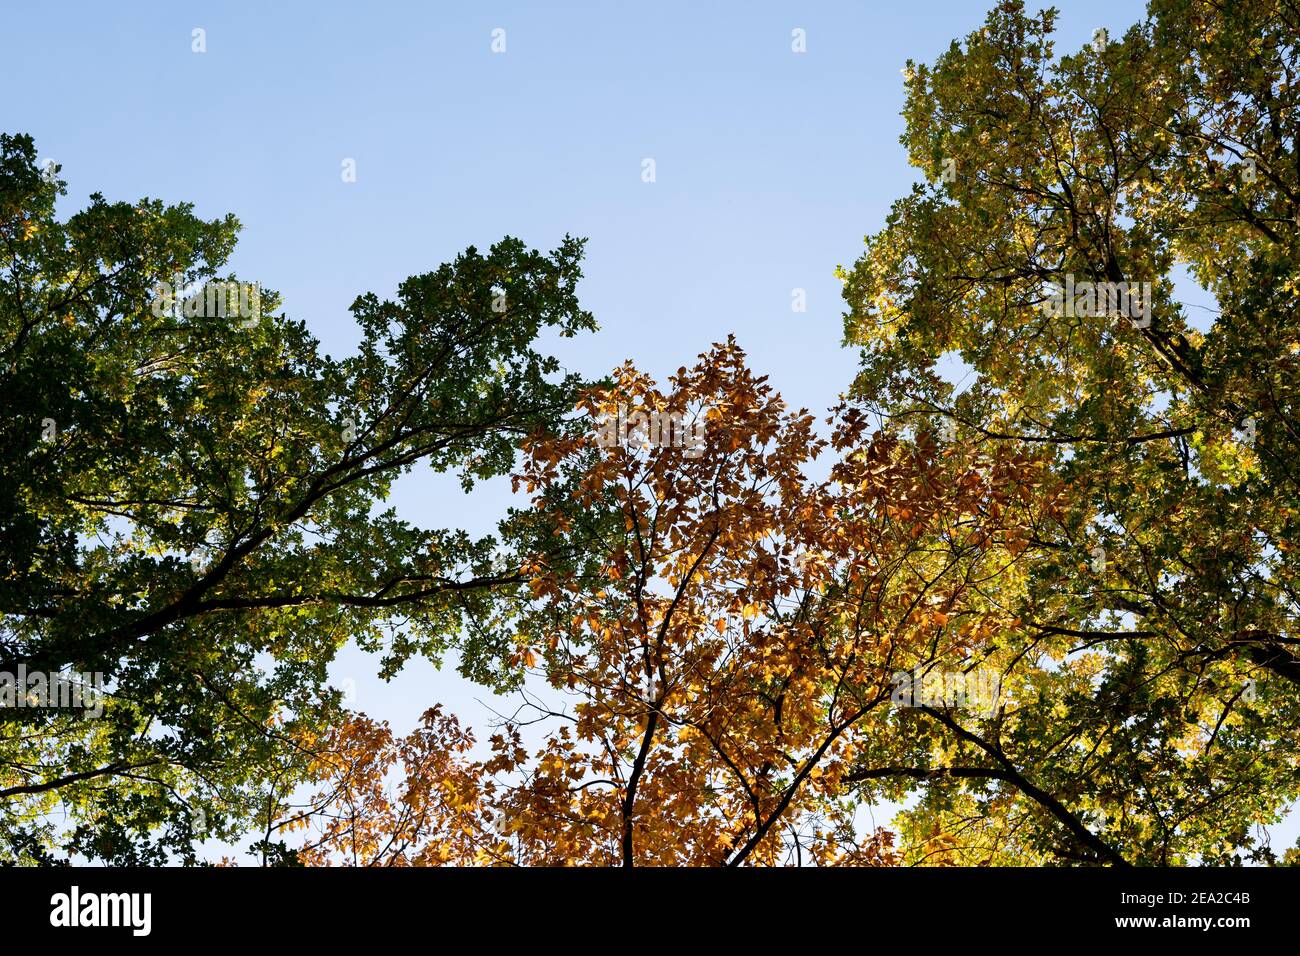 Foglie d'autunno colorate sugli alberi illuminate dalla luce del sole con un bel cielo blu sullo sfondo. Fogliame verde, marrone e giallo Foto Stock